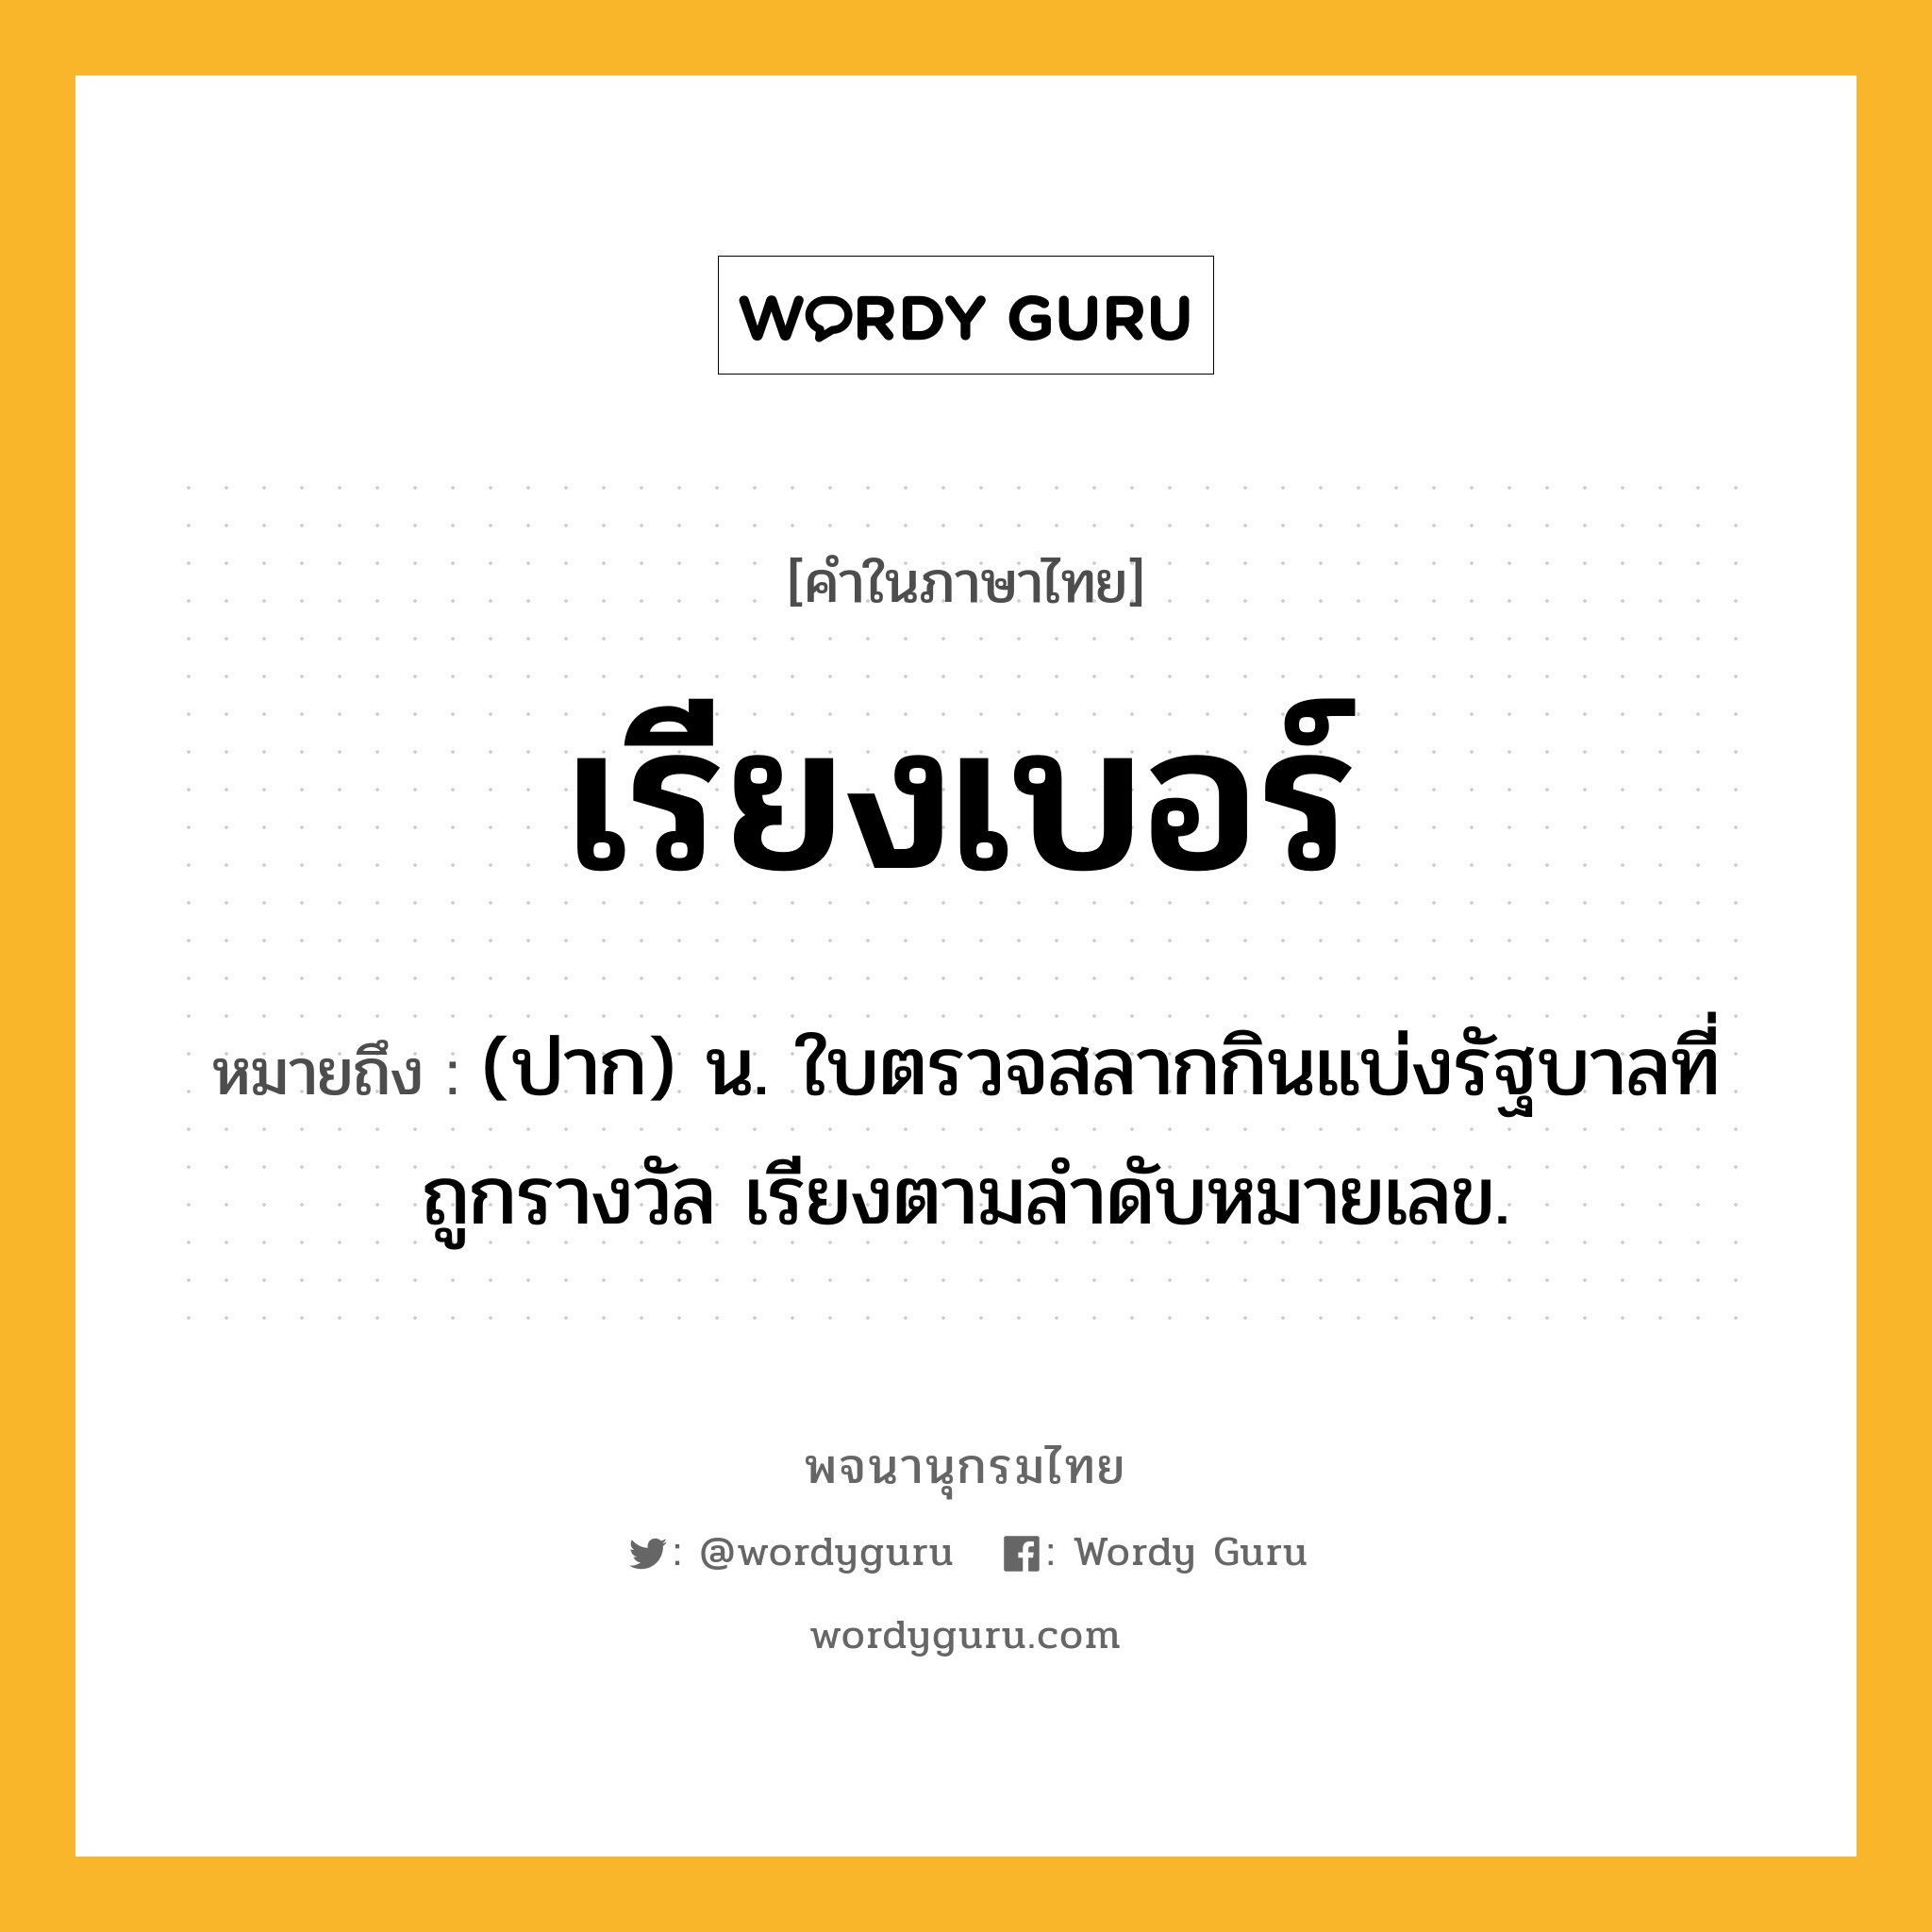 เรียงเบอร์ หมายถึงอะไร?, คำในภาษาไทย เรียงเบอร์ หมายถึง (ปาก) น. ใบตรวจสลากกินแบ่งรัฐบาลที่ถูกรางวัล เรียงตามลำดับหมายเลข.